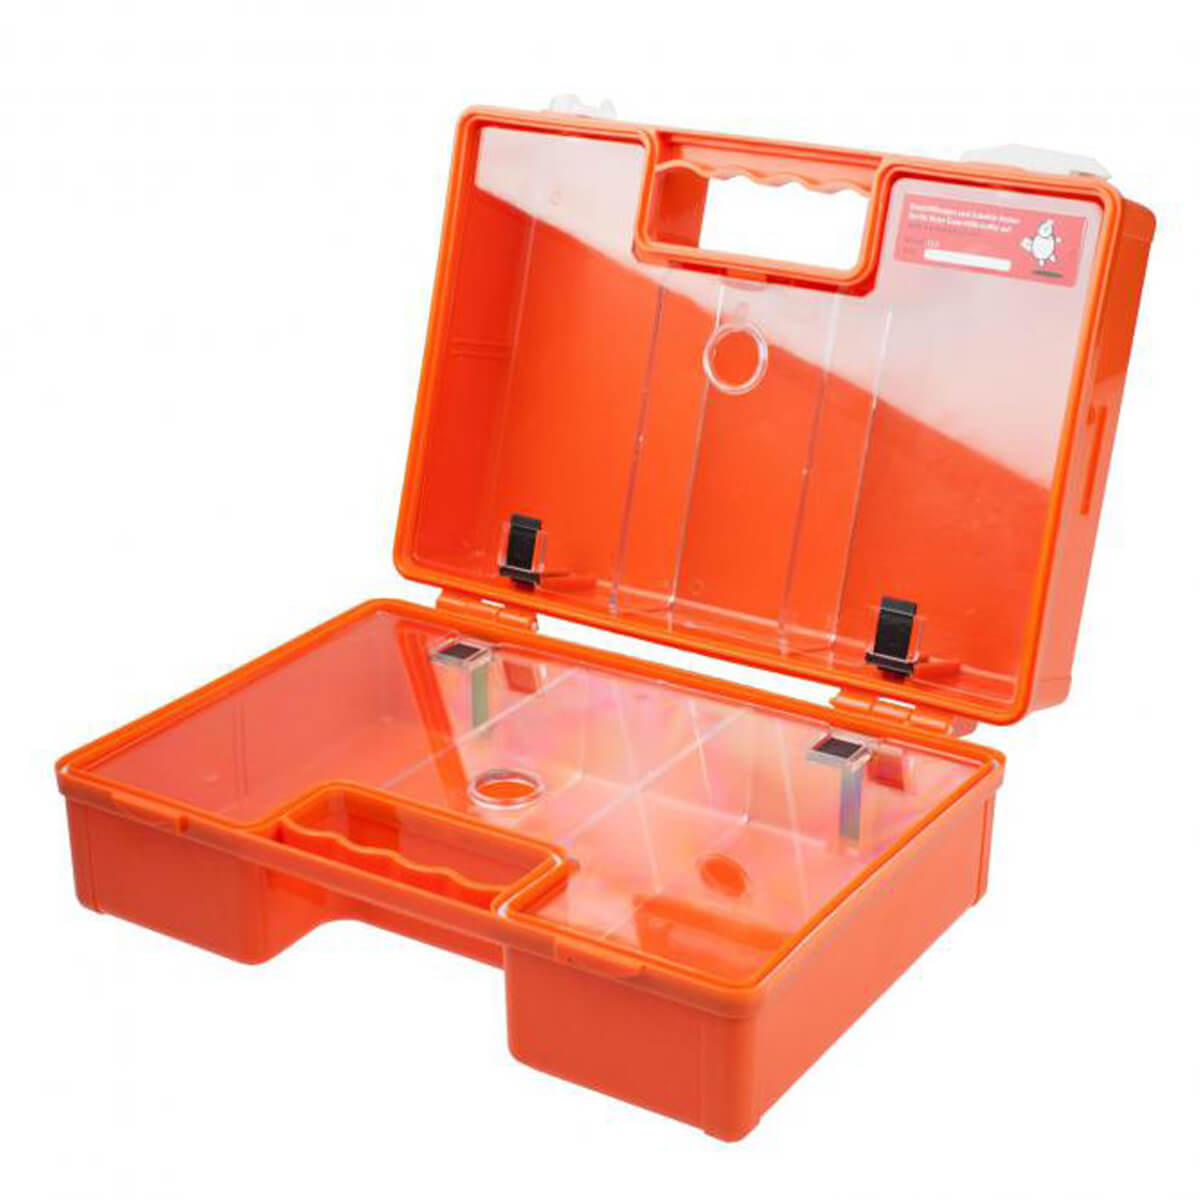 Erste Hilfe Koffer Modell III. ABS orange, leer. Dim. 430 x 300 x 140 mm  kaufen